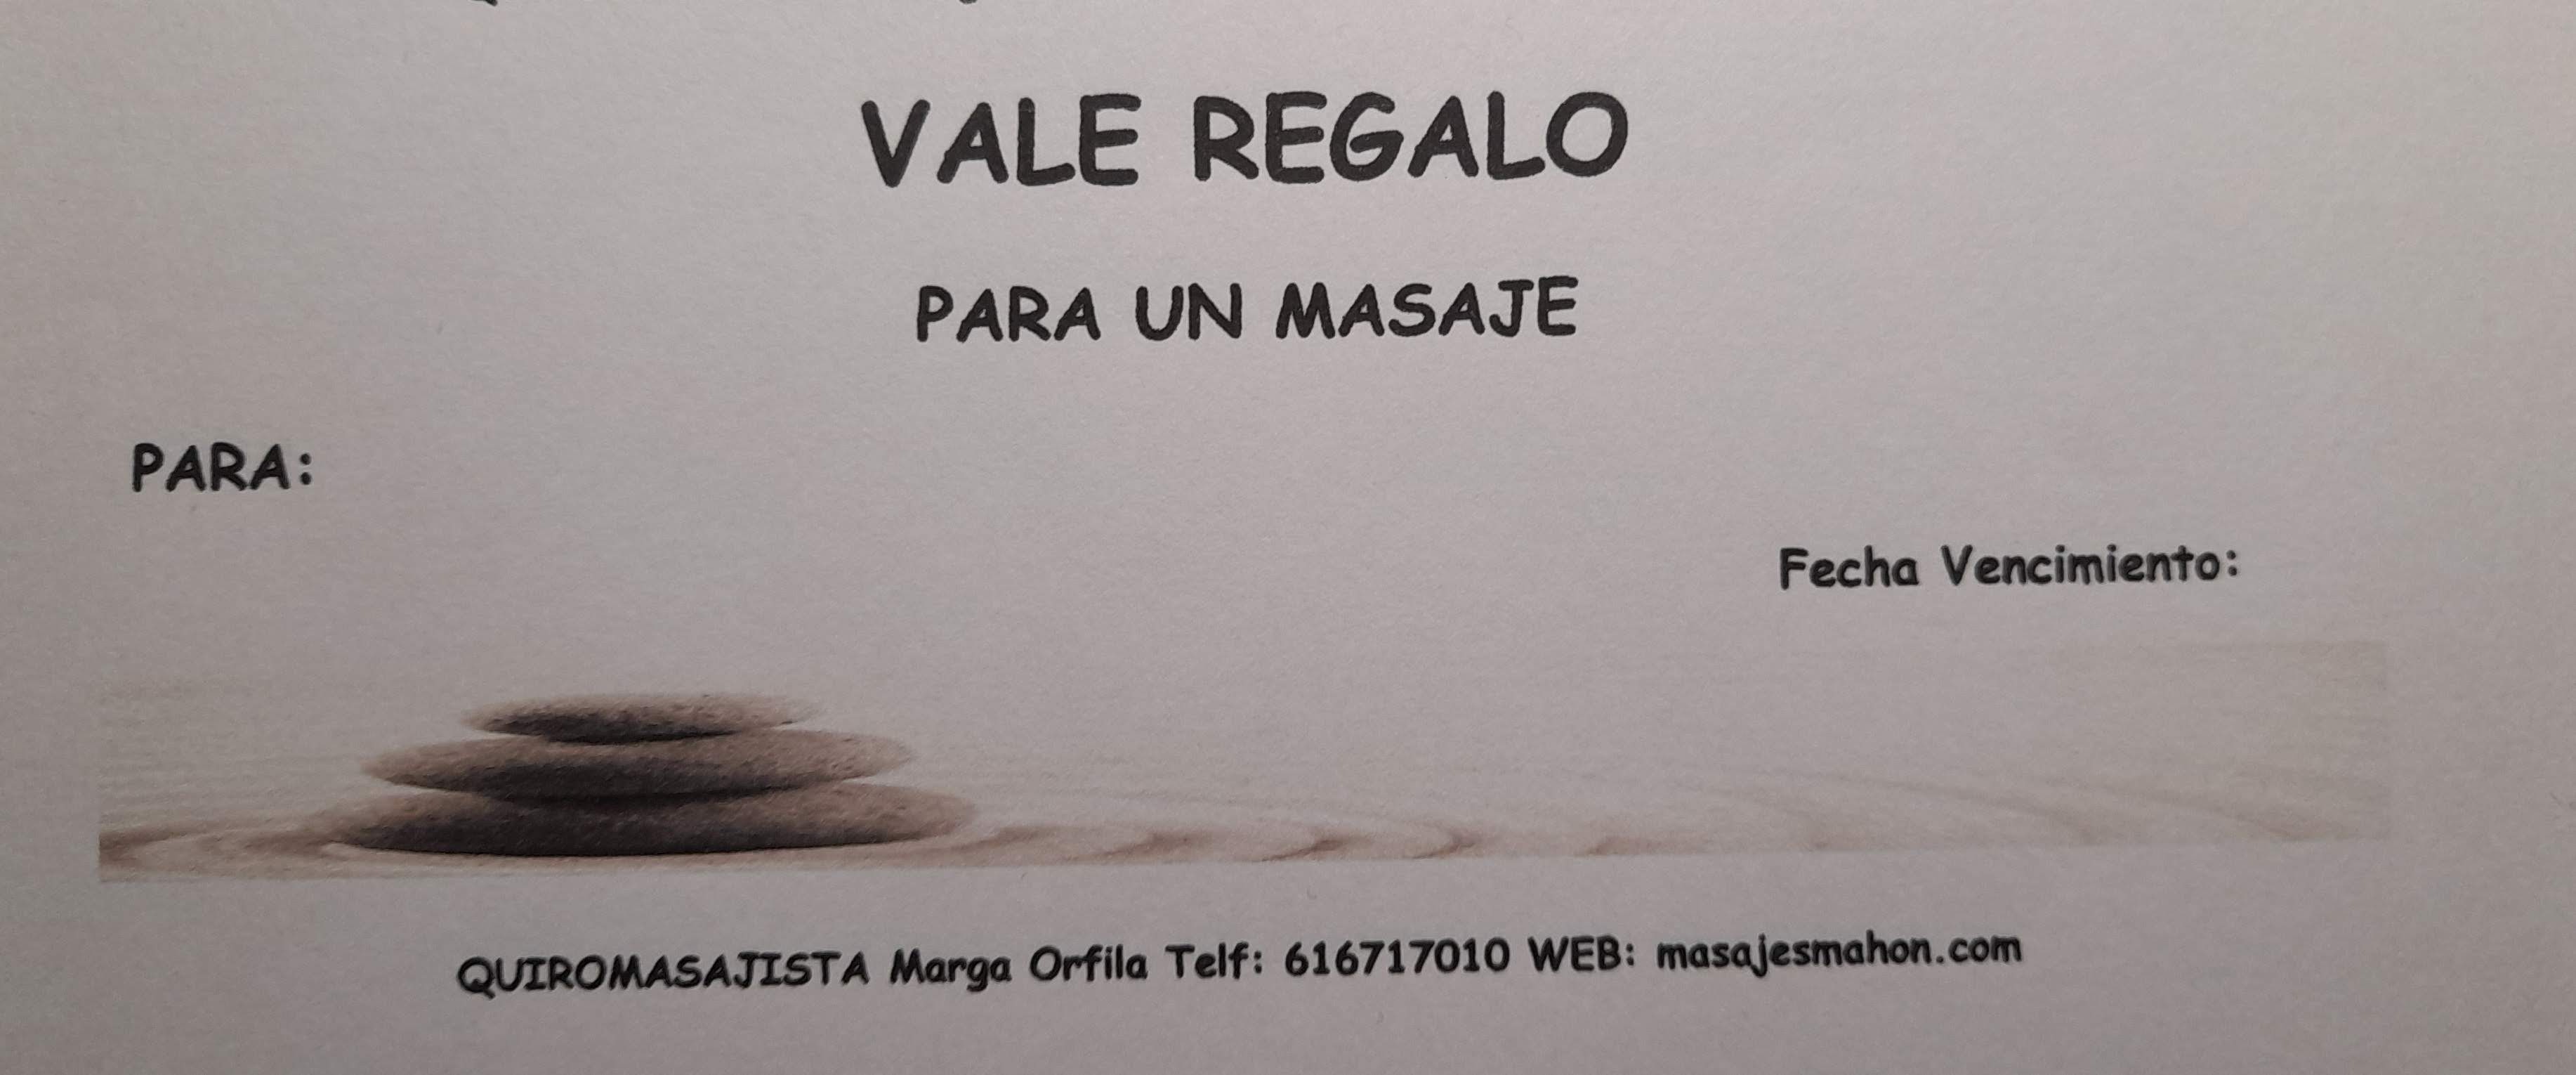 Vale Para Un Masaje CHEQUES REGALO – Quiromasajista Marga Orfila